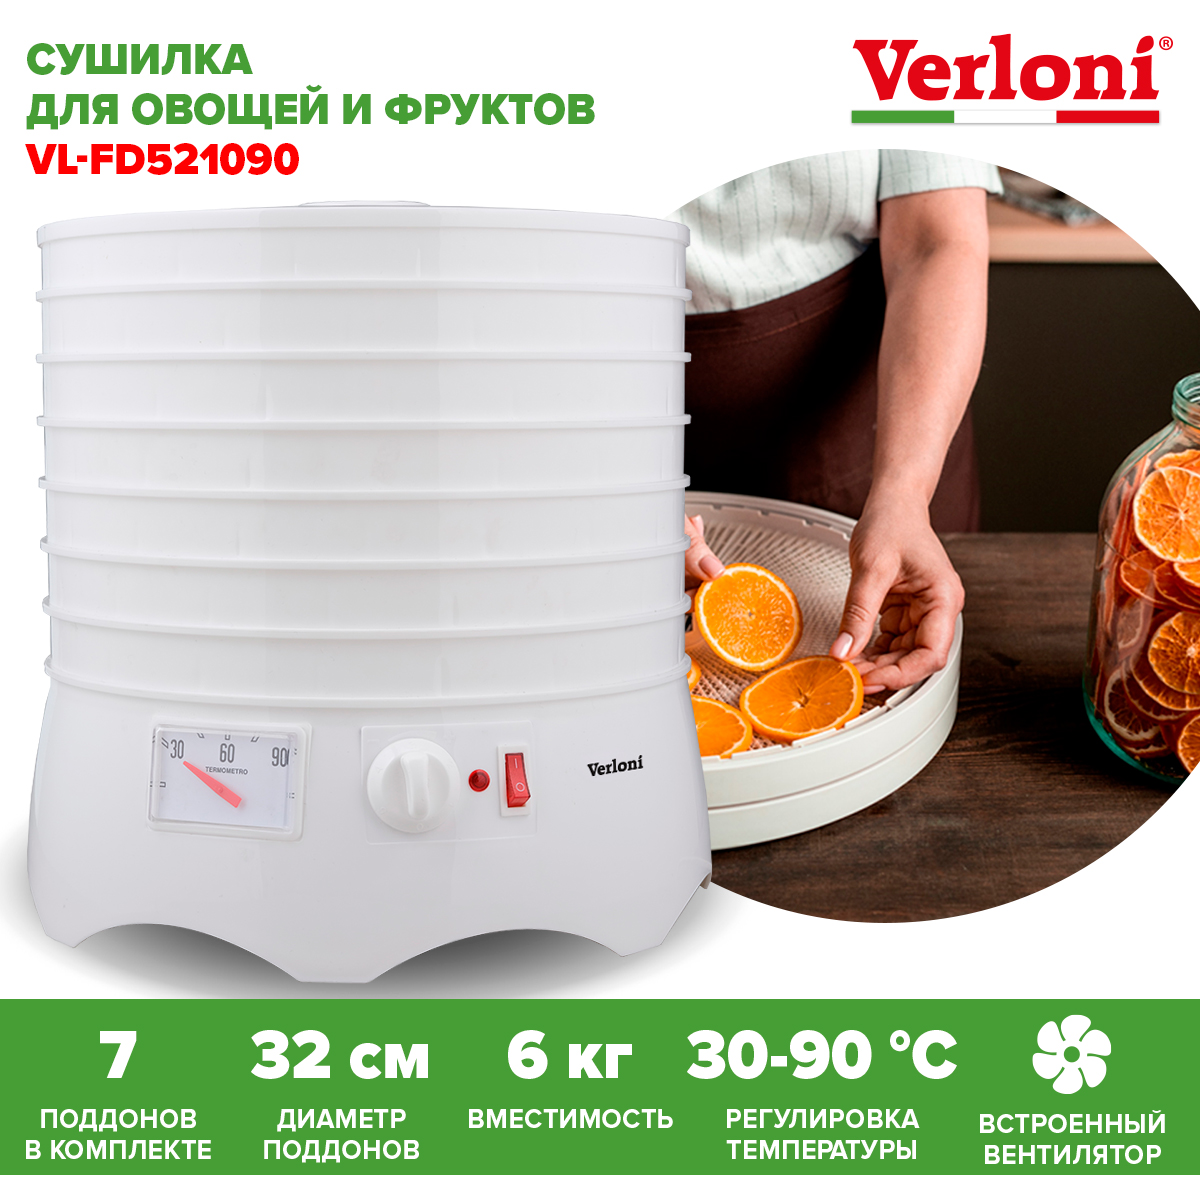 Сушилка для овощей и фруктов Verloni VL-FD521090 белая сушилка для овощей и фруктов supra dfs 652 белая серая